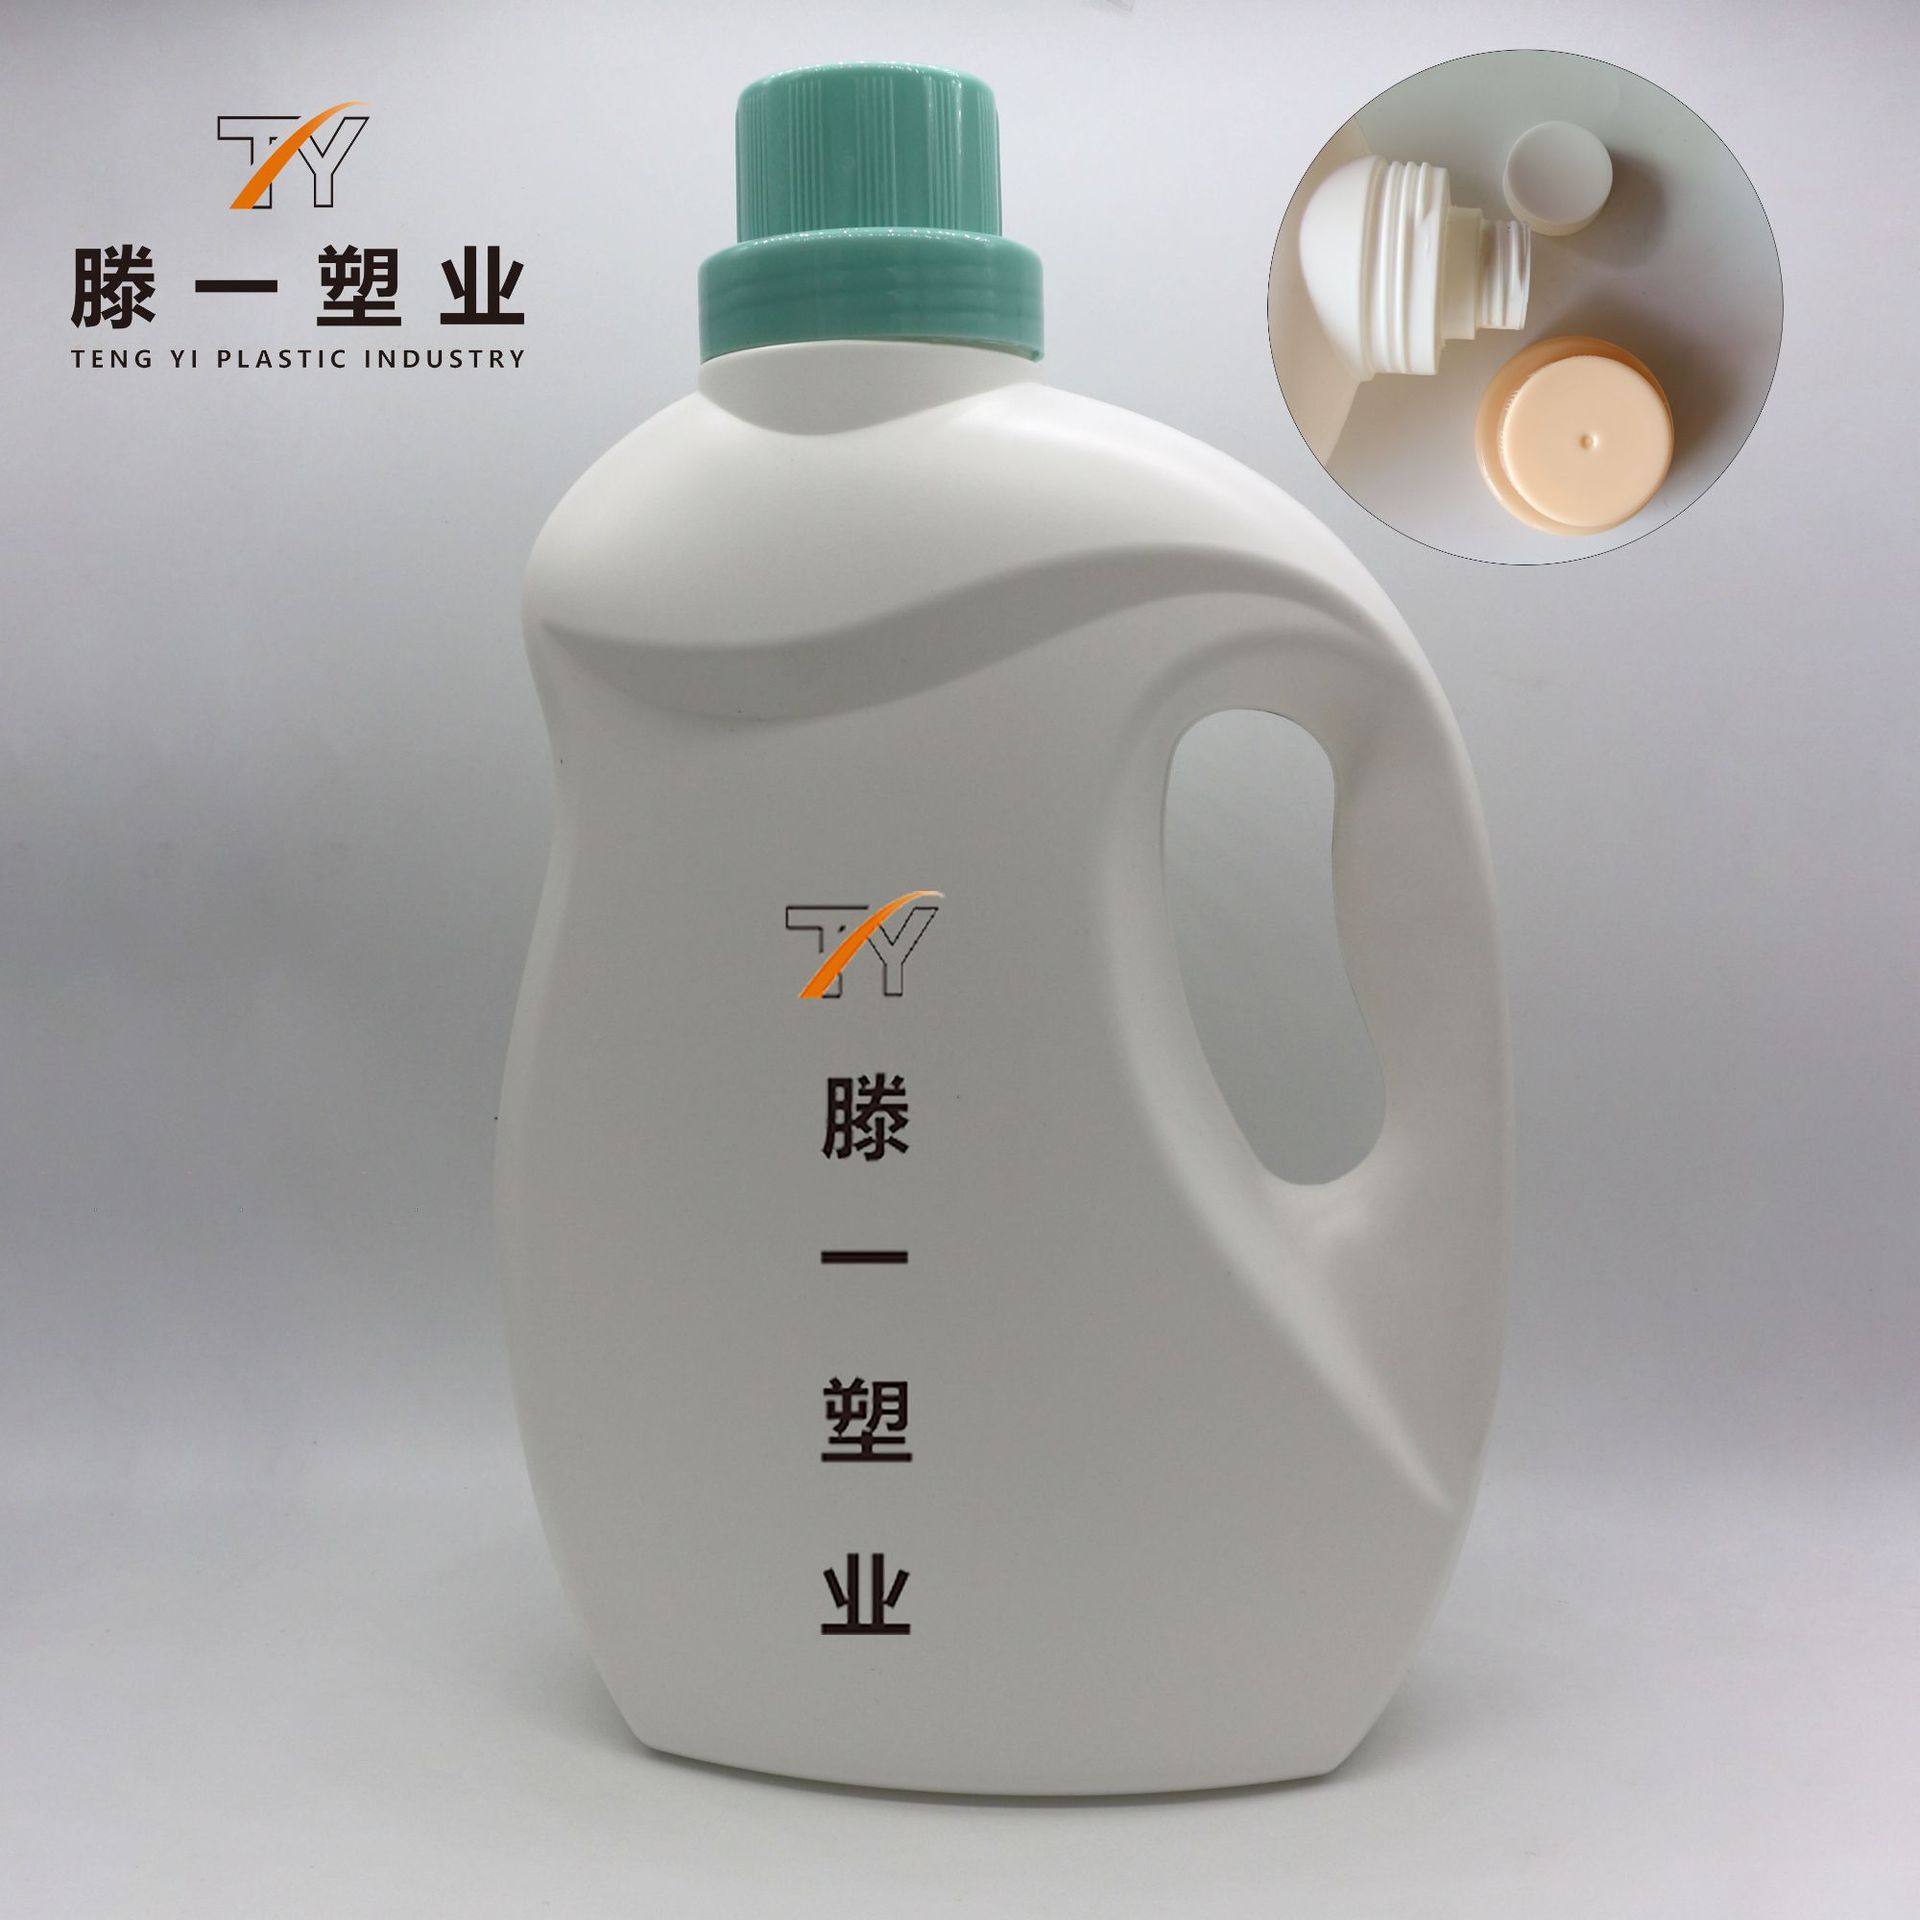 瓶子厂家批发 洗衣液包装桶 PE白色瓶 配电商双层盖 洗衣液瓶2L